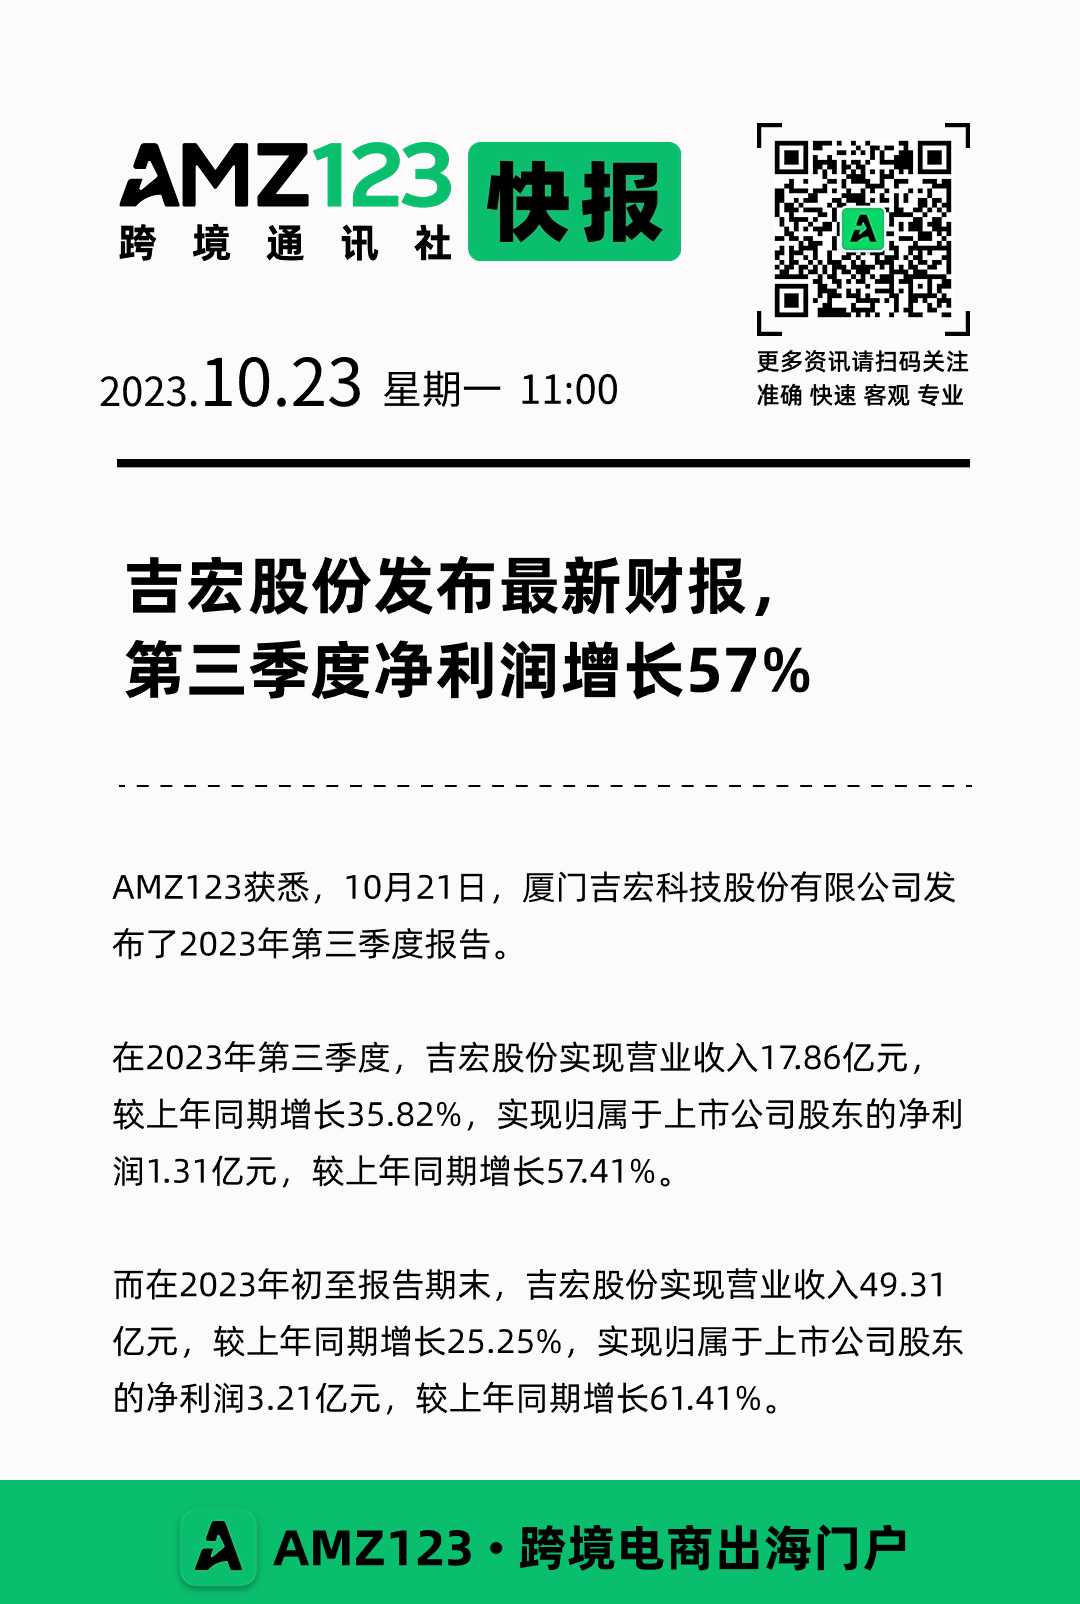 吉宏股份发布最新财报， 第三季度净利润增长57%